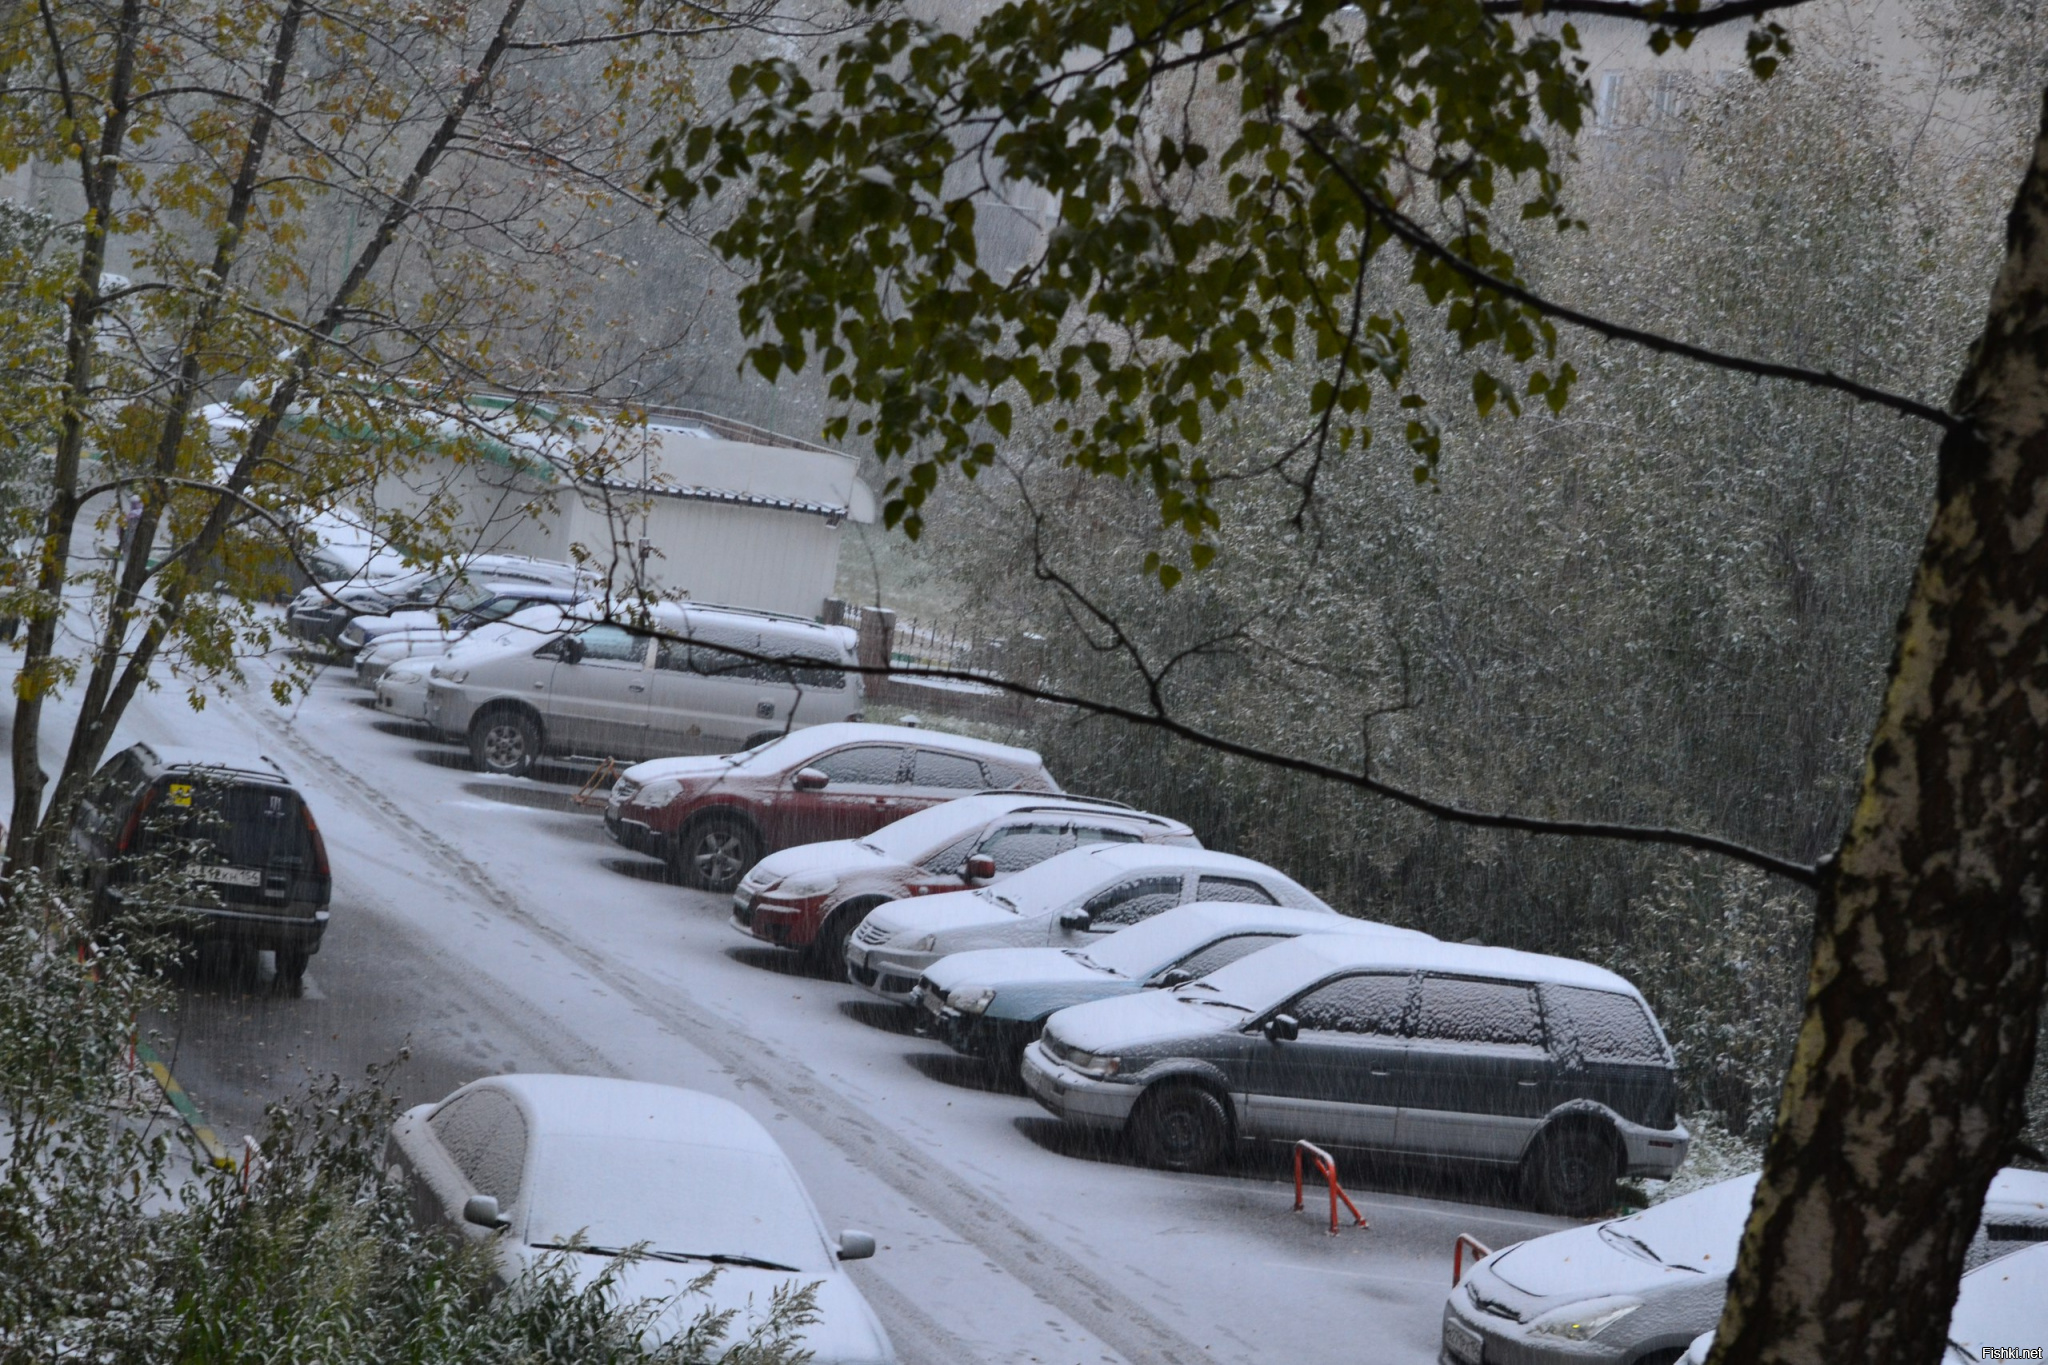 Сочи снегопад сегодня. Где лежит снег сегодня. Чита снег сегодня. Екатеринбург сегодня фото снегопад. Сегодня снег пришел